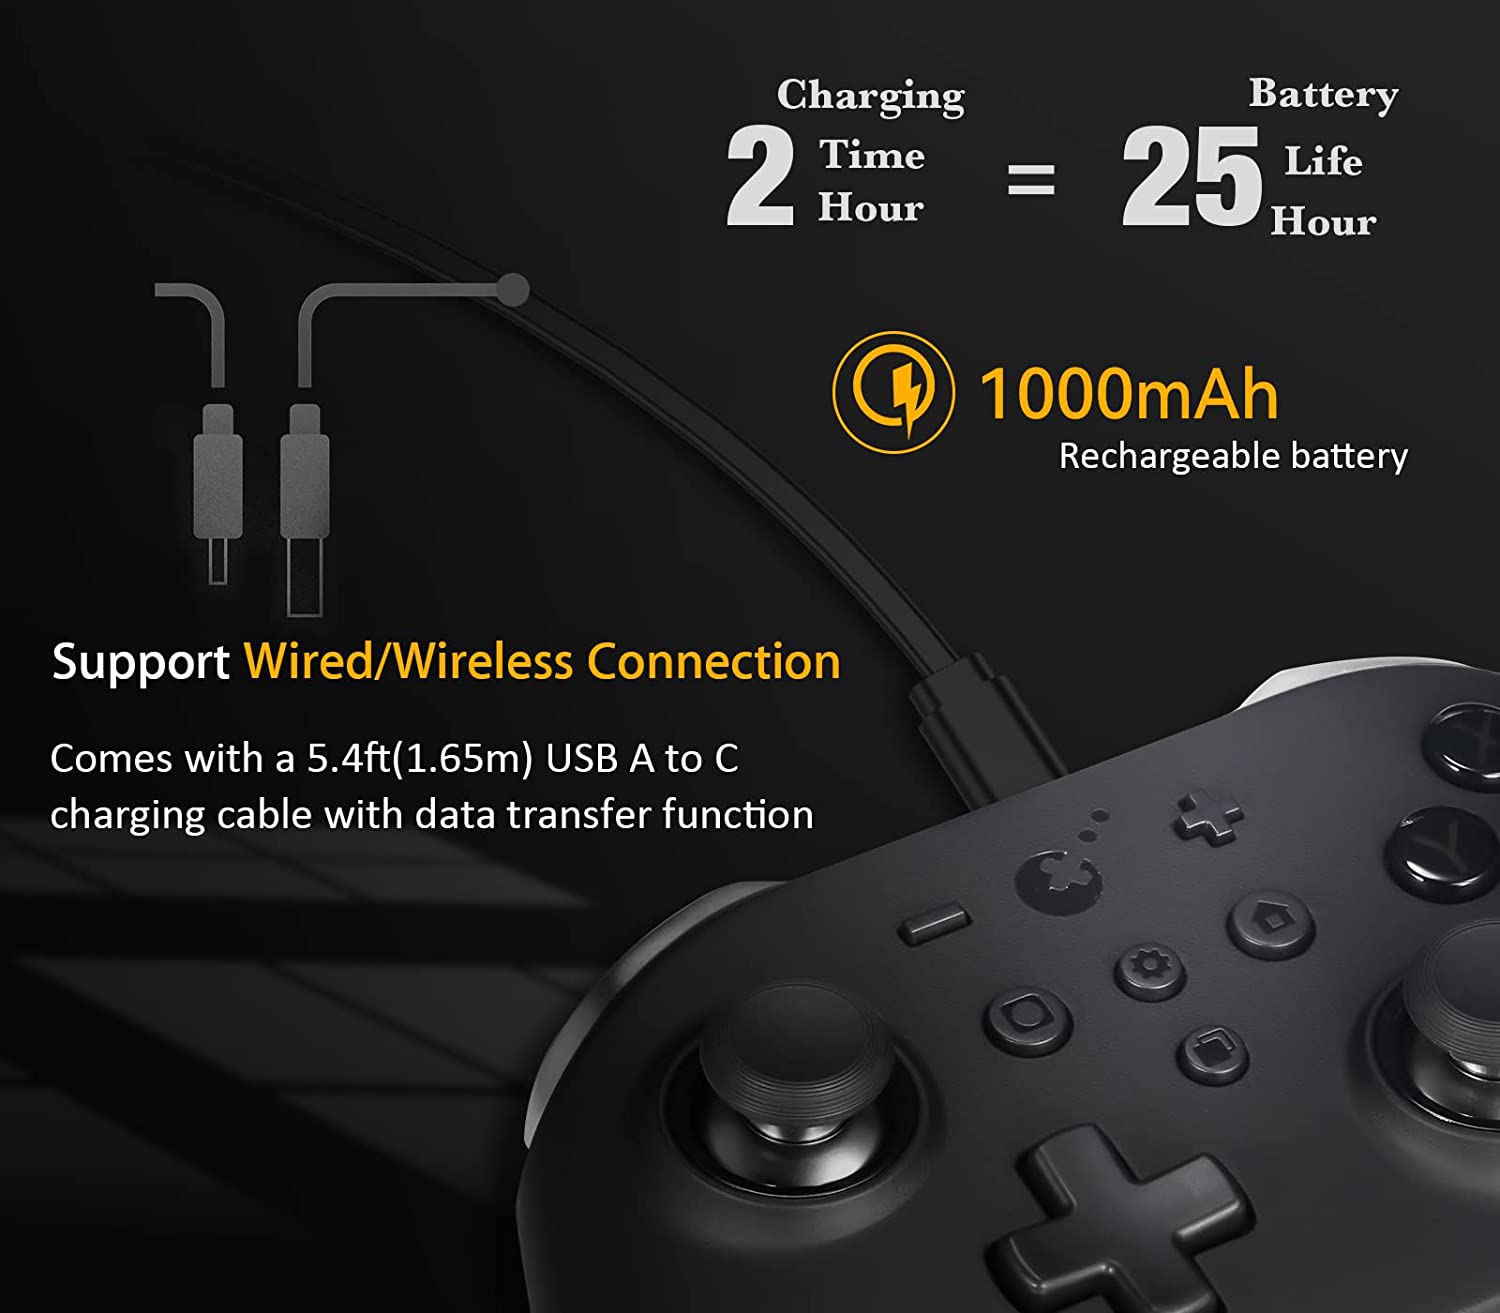 GuliKit No Stick Drift KingKong 2 Pro Wireless Bluetooth Controller for Nintendo Switch - Black - Pro-Distributing